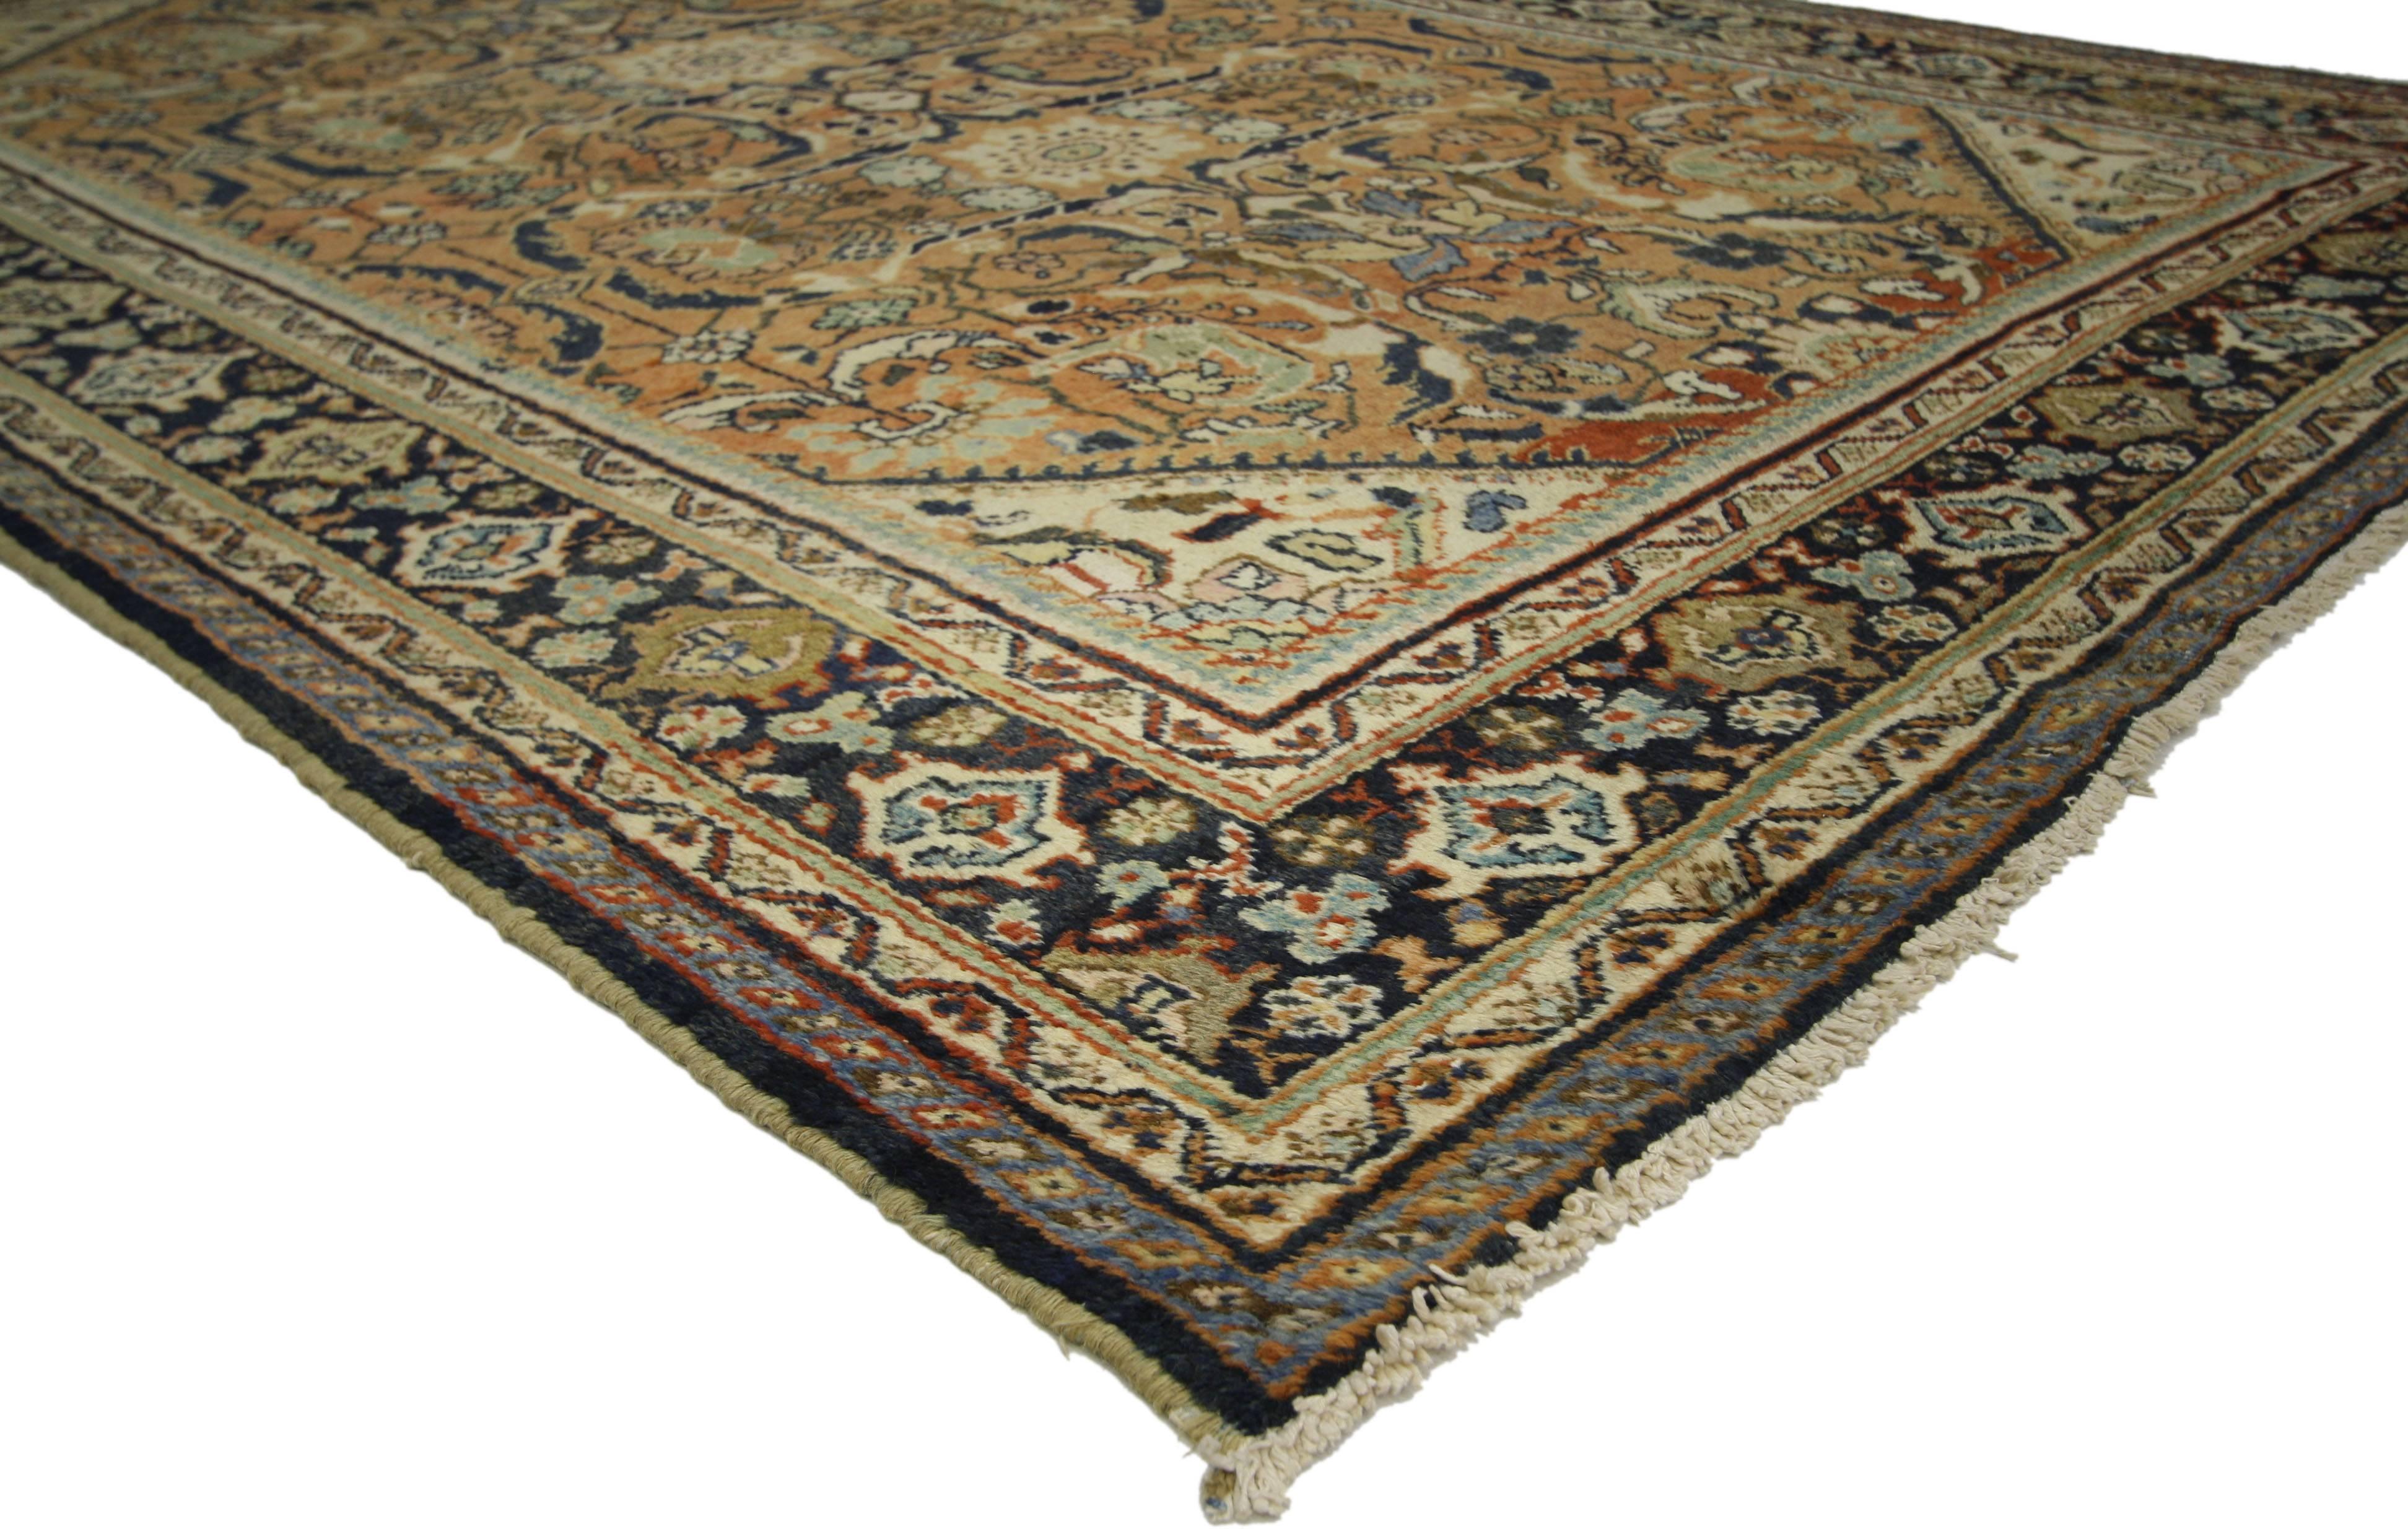 72732 tapis persan antique Mahal avec un style Bungalow Craftsman chaleureux. Chaleureux et accueillant, ce Mahal persan ancien en laine nouée à la main incarne à merveille le style Bungalow Craftsman. Le champ de couleur rouille est couvert d'un